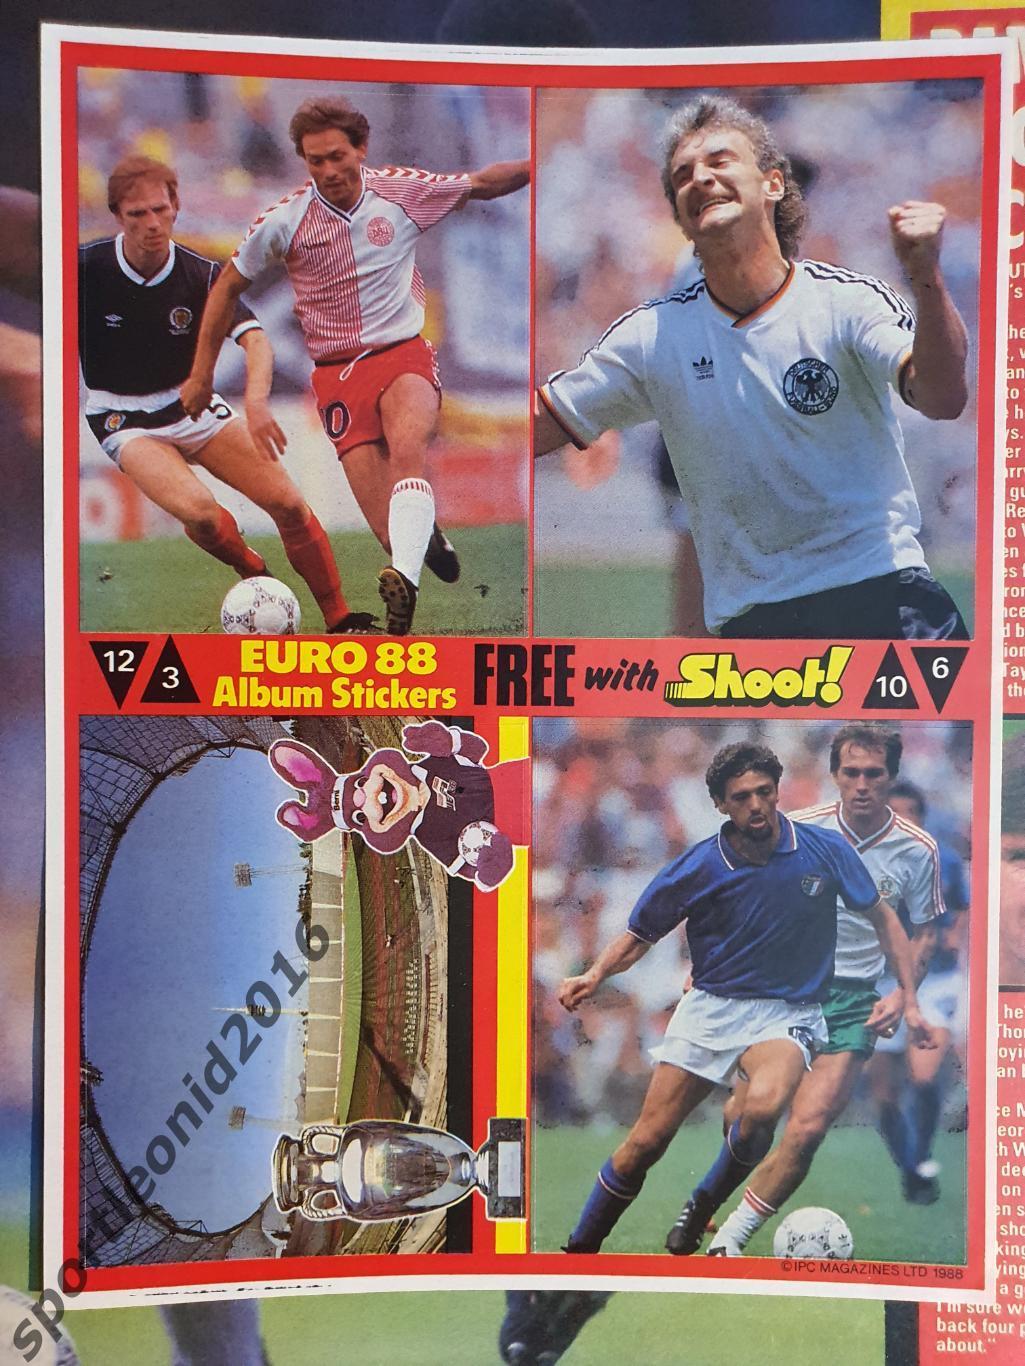 SHOOT 1987/88 24 журнала.8 Стикеров наклеек к Евро-88.Редкость.3